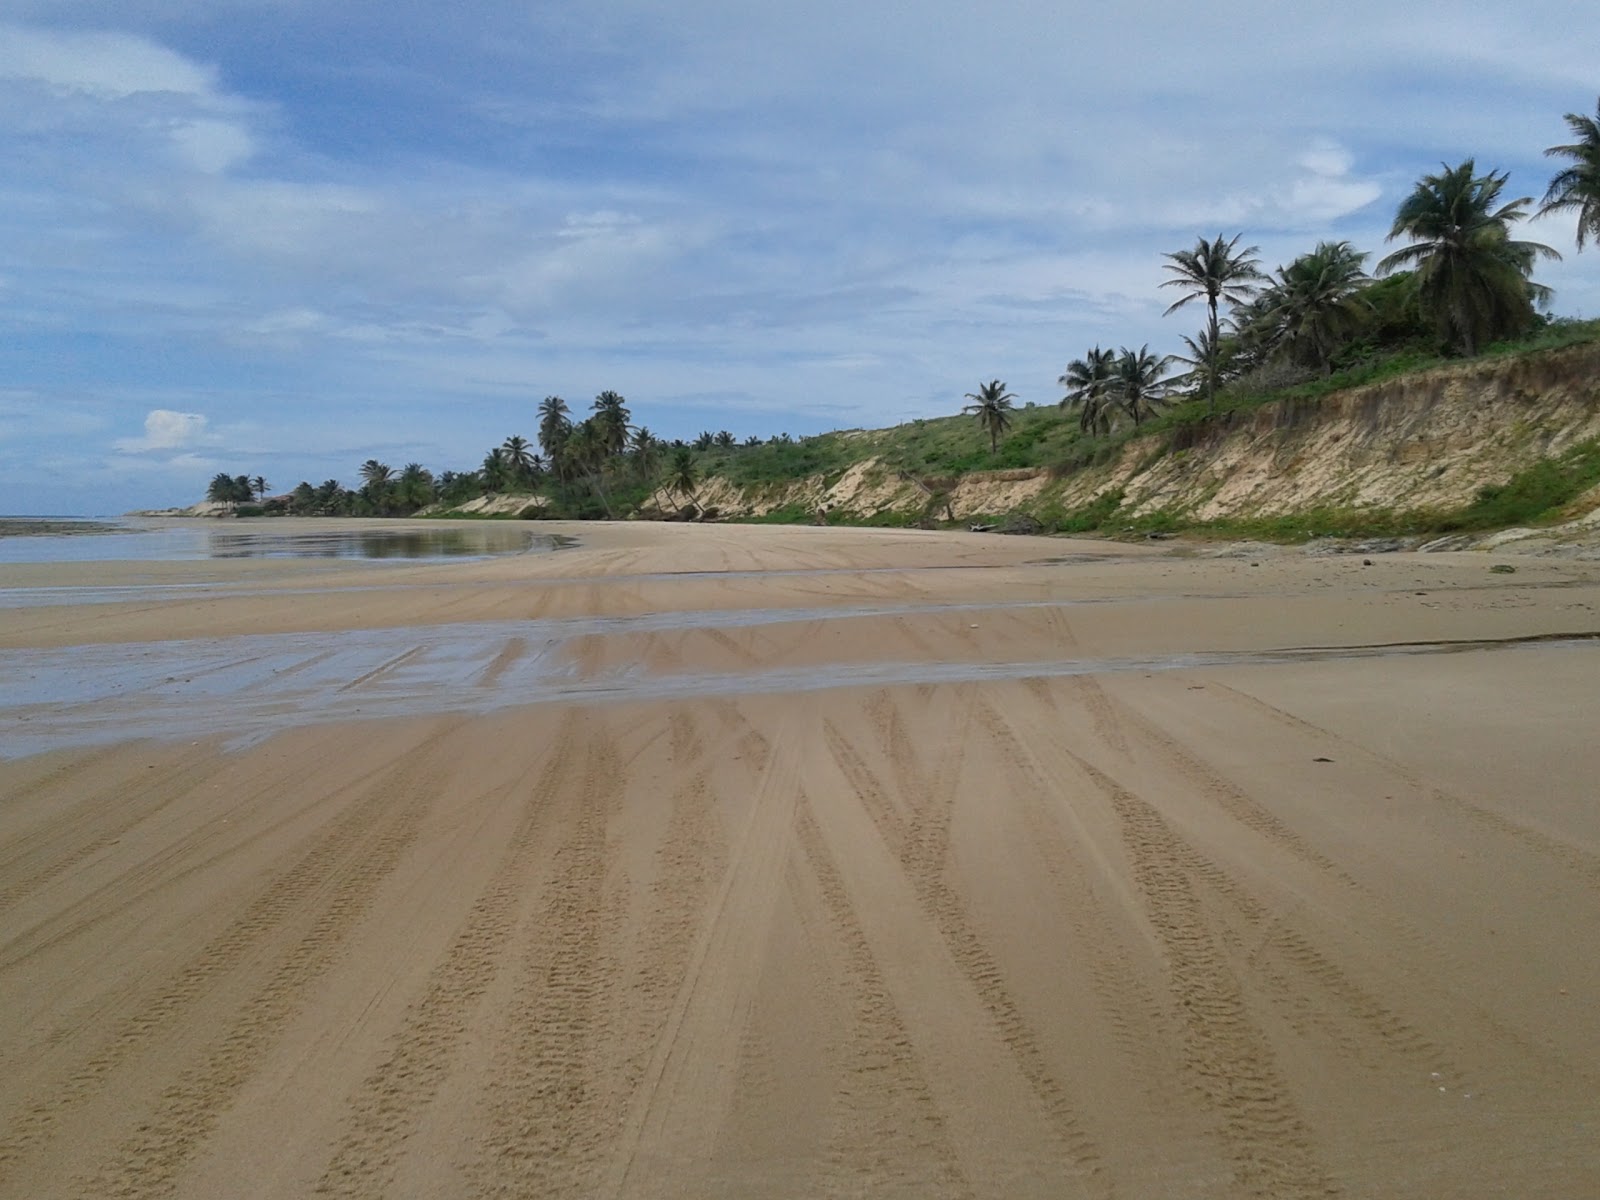 Zdjęcie Praia de Caetanos z poziomem czystości wysoki